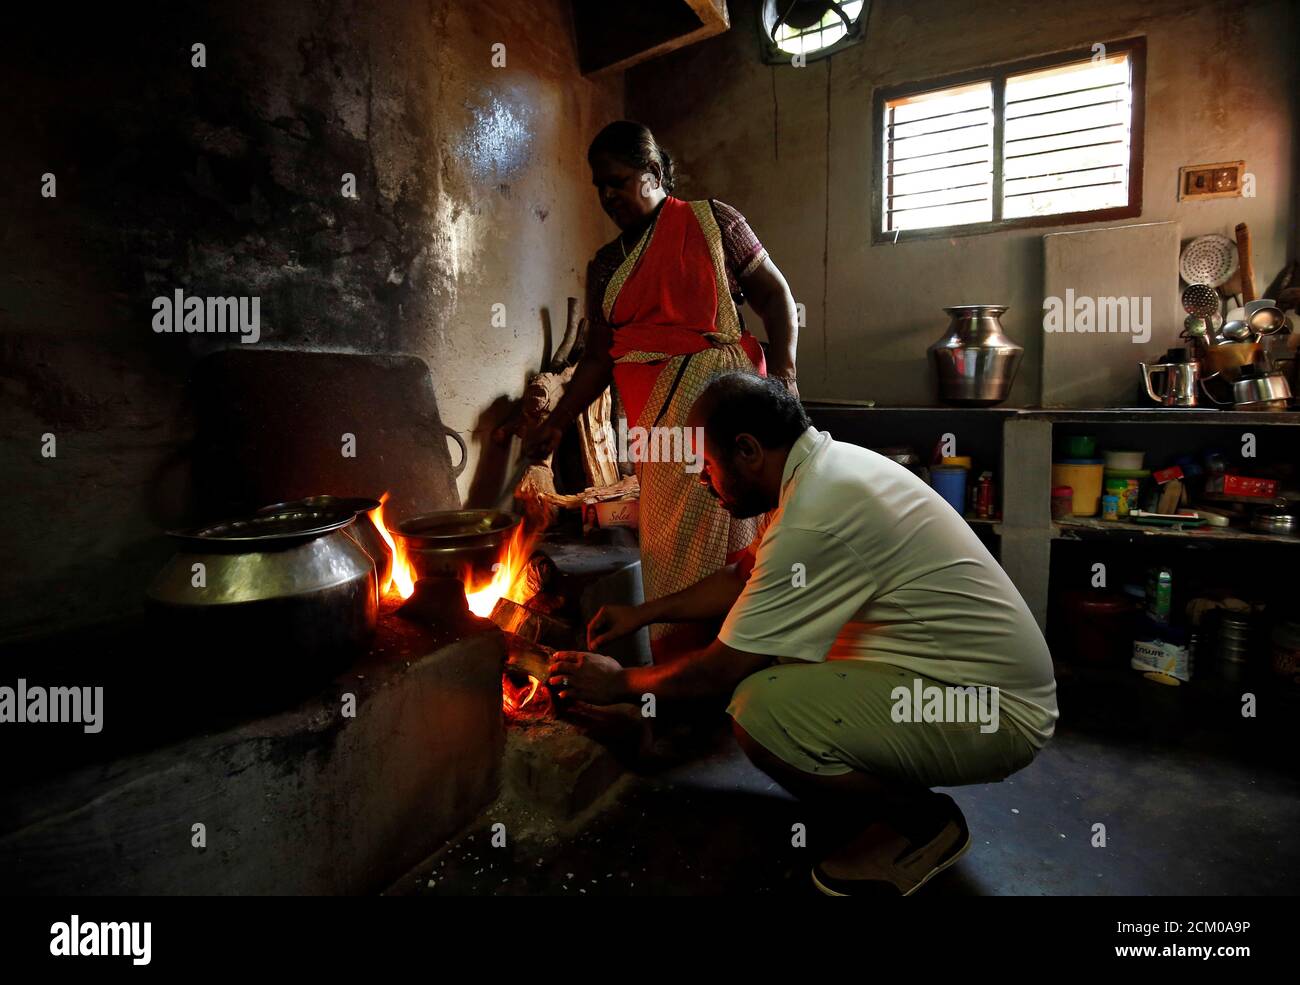 Karibeeran Paramesvaran (frente), que perdió a tres niños en el tsunami de 2004, ayuda a cocinar alimentos dentro de su casa que se ha convertido en un hogar de cuidado para niños huérfanos en el distrito de Nagapattinam en el estado sureño de Tamil Nadu, India, 4 de diciembre de 2019. Foto tomada el 4 de diciembre de 2019. REUTERS/P. Ravikumar Foto de stock